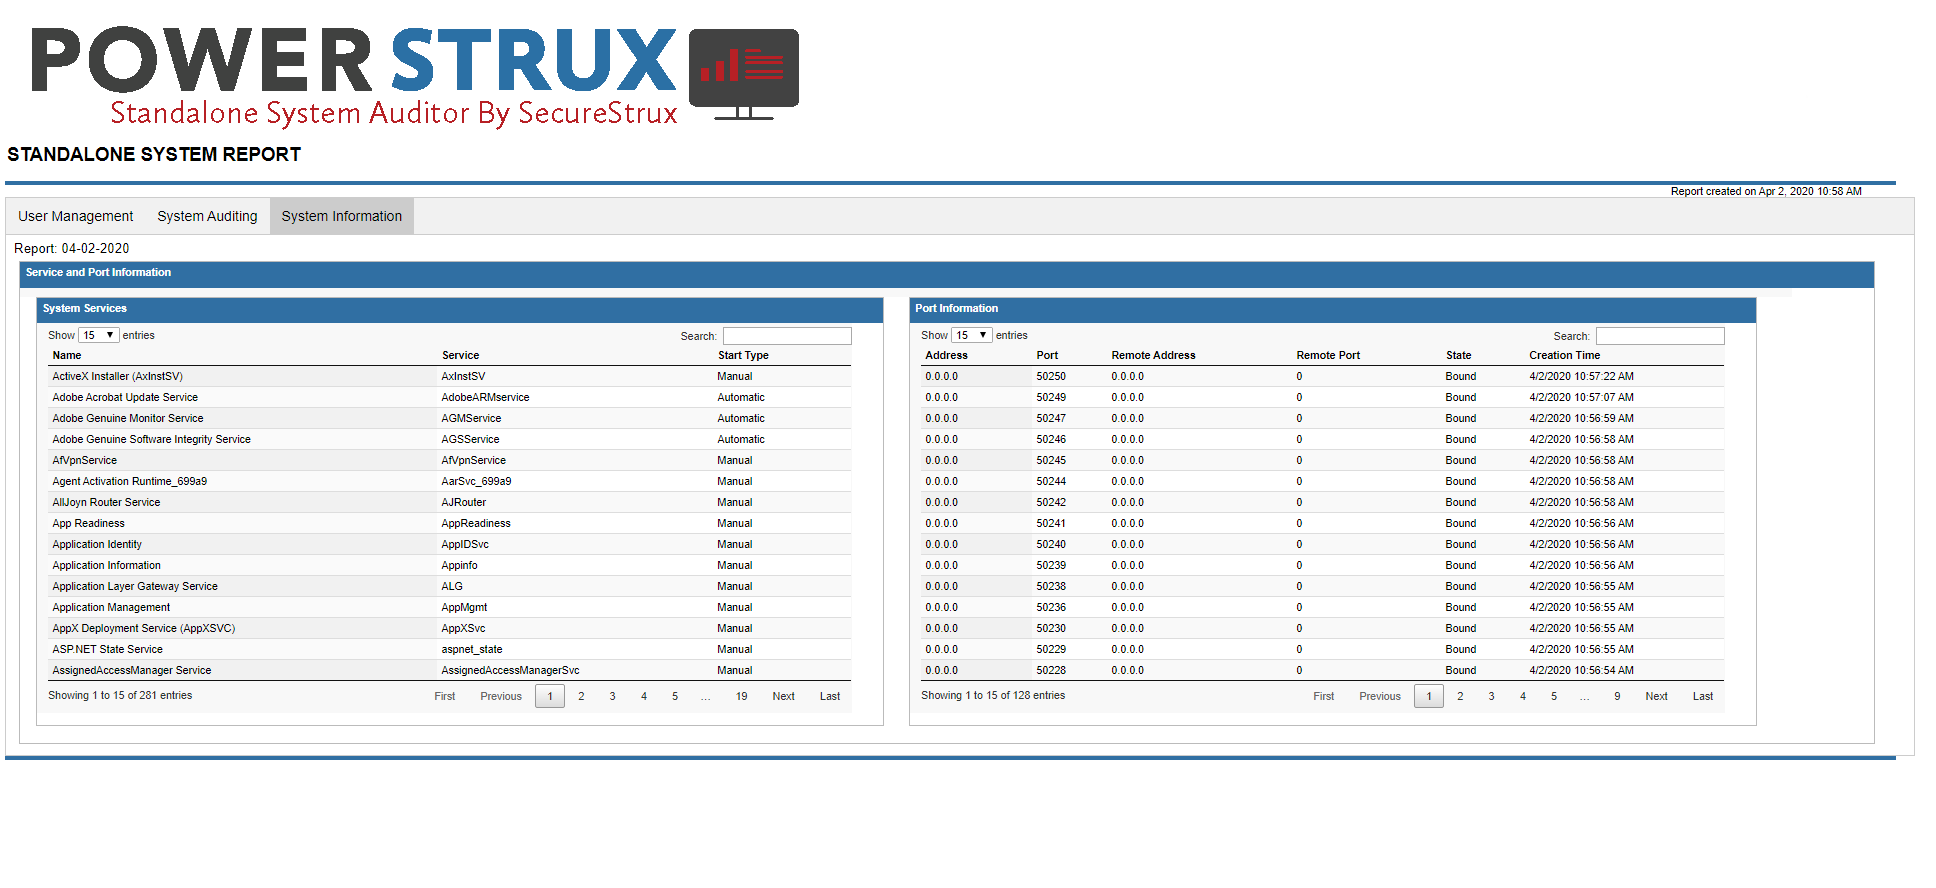 Powerstrux - Standalone System Auditor - System Information